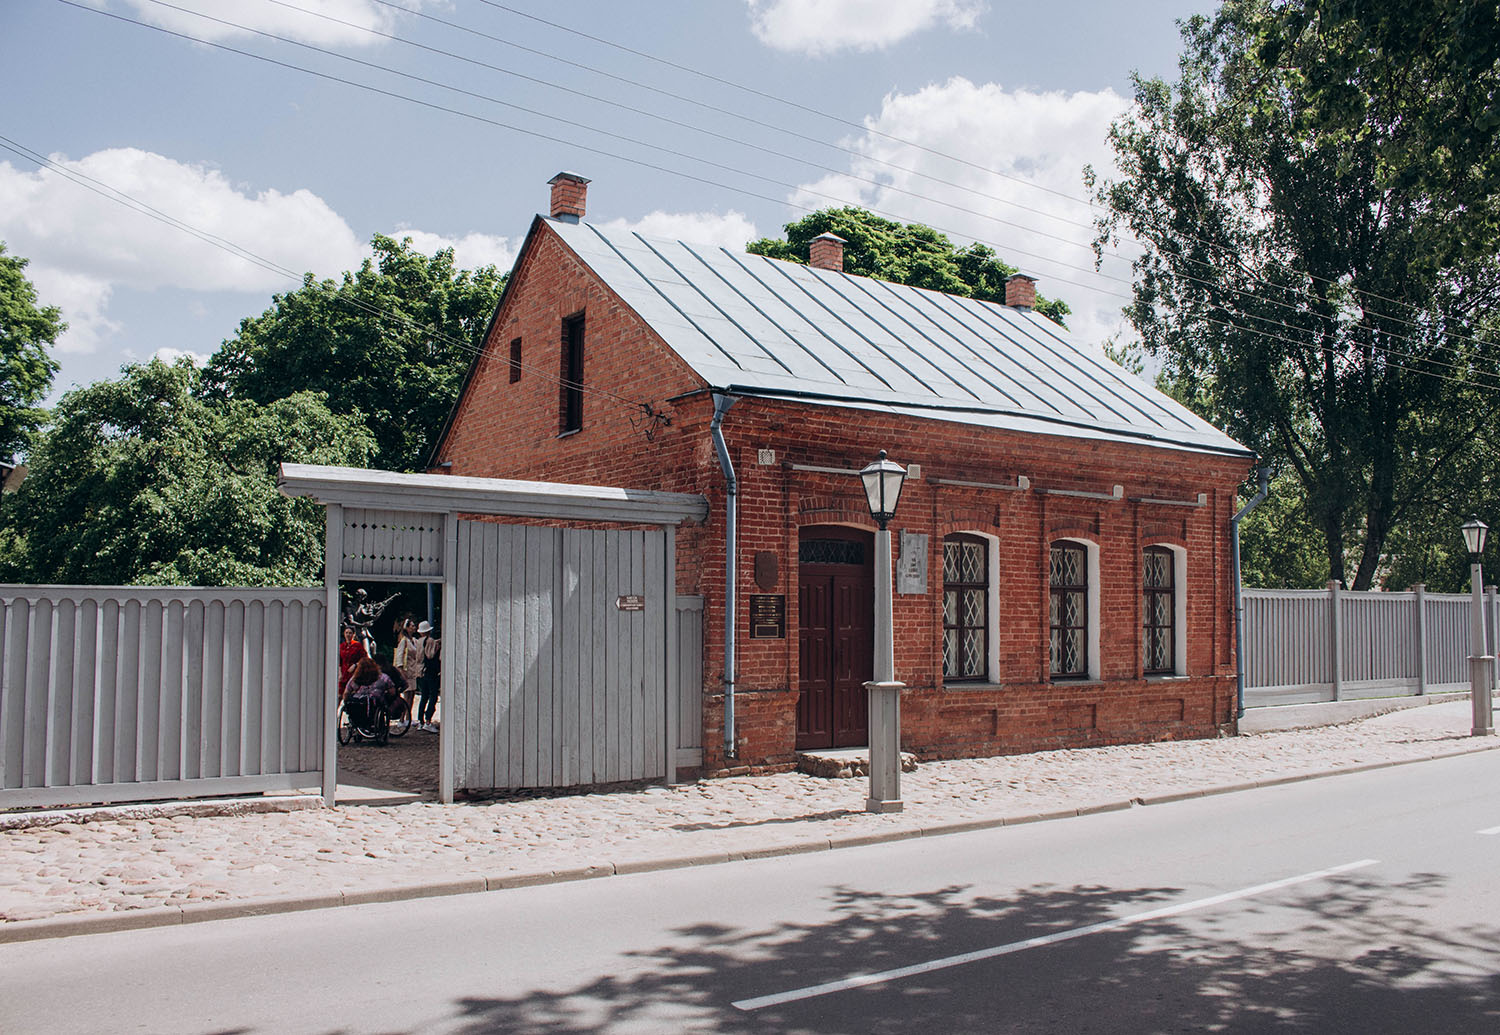 Витебск улица Кондратьева 11 дом-музей марка Шагала. Дом в Витебске, в котором родился Клейн.